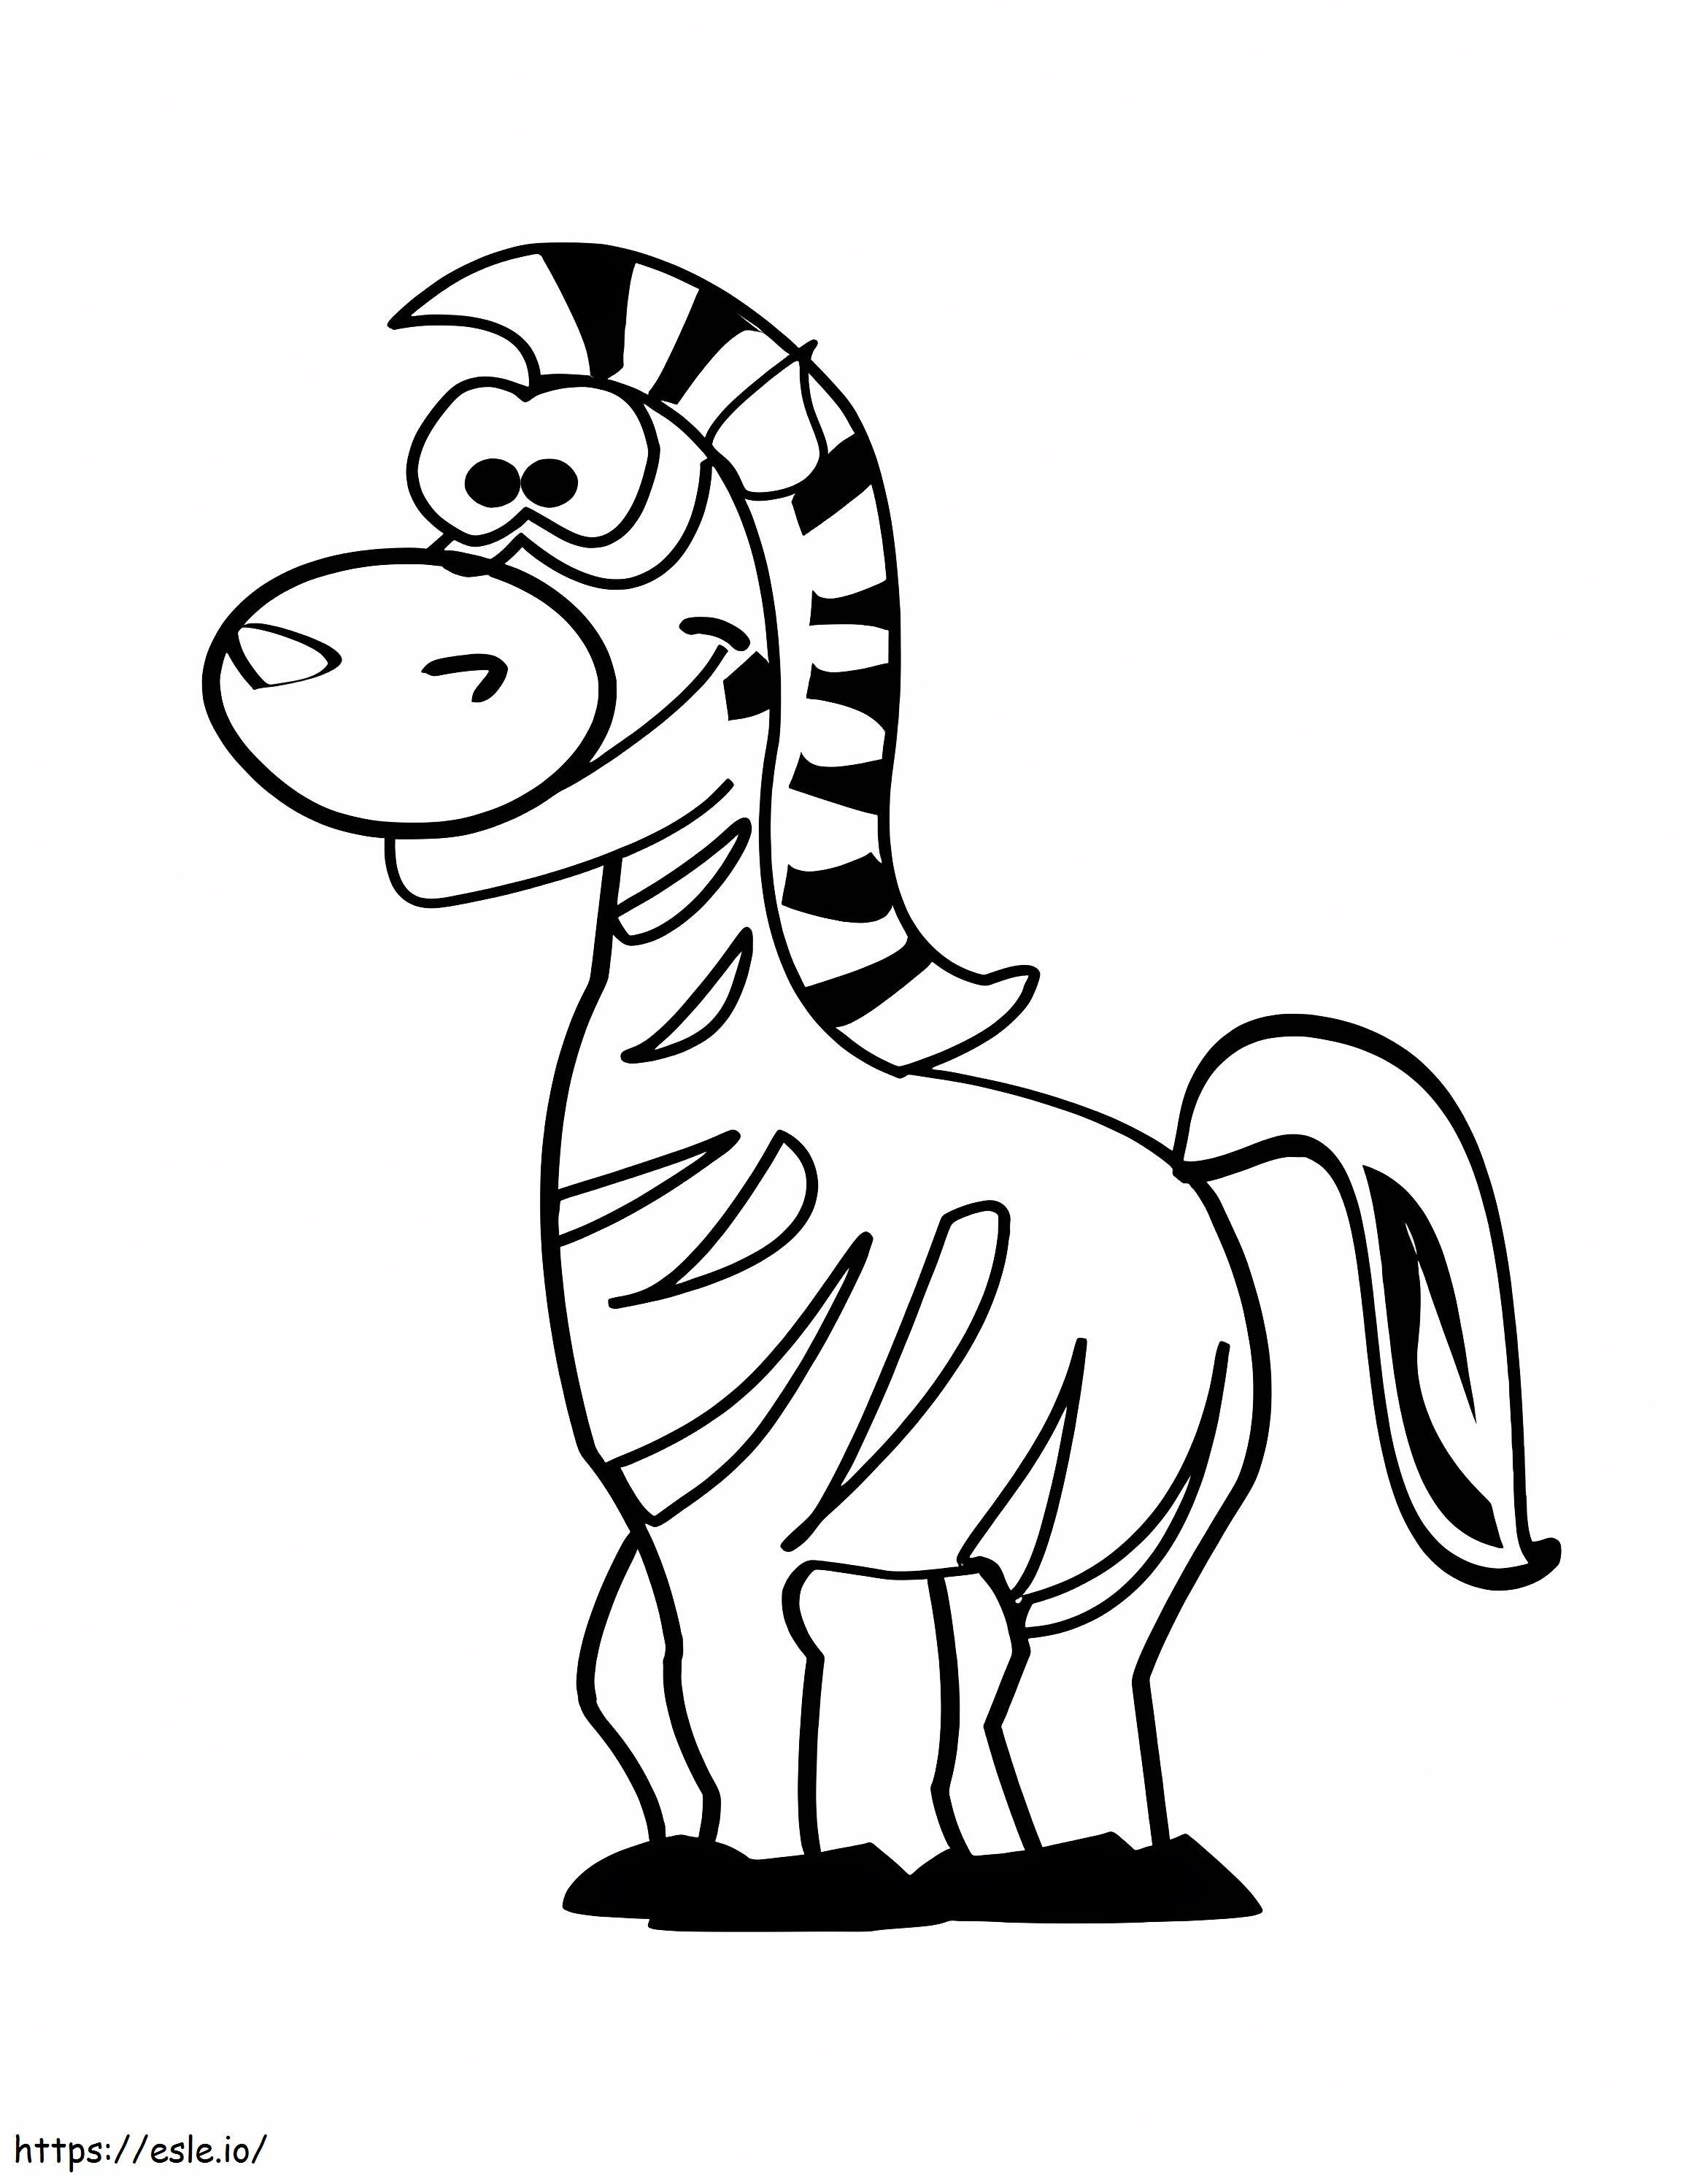 Lustiges Zebra ausmalbilder